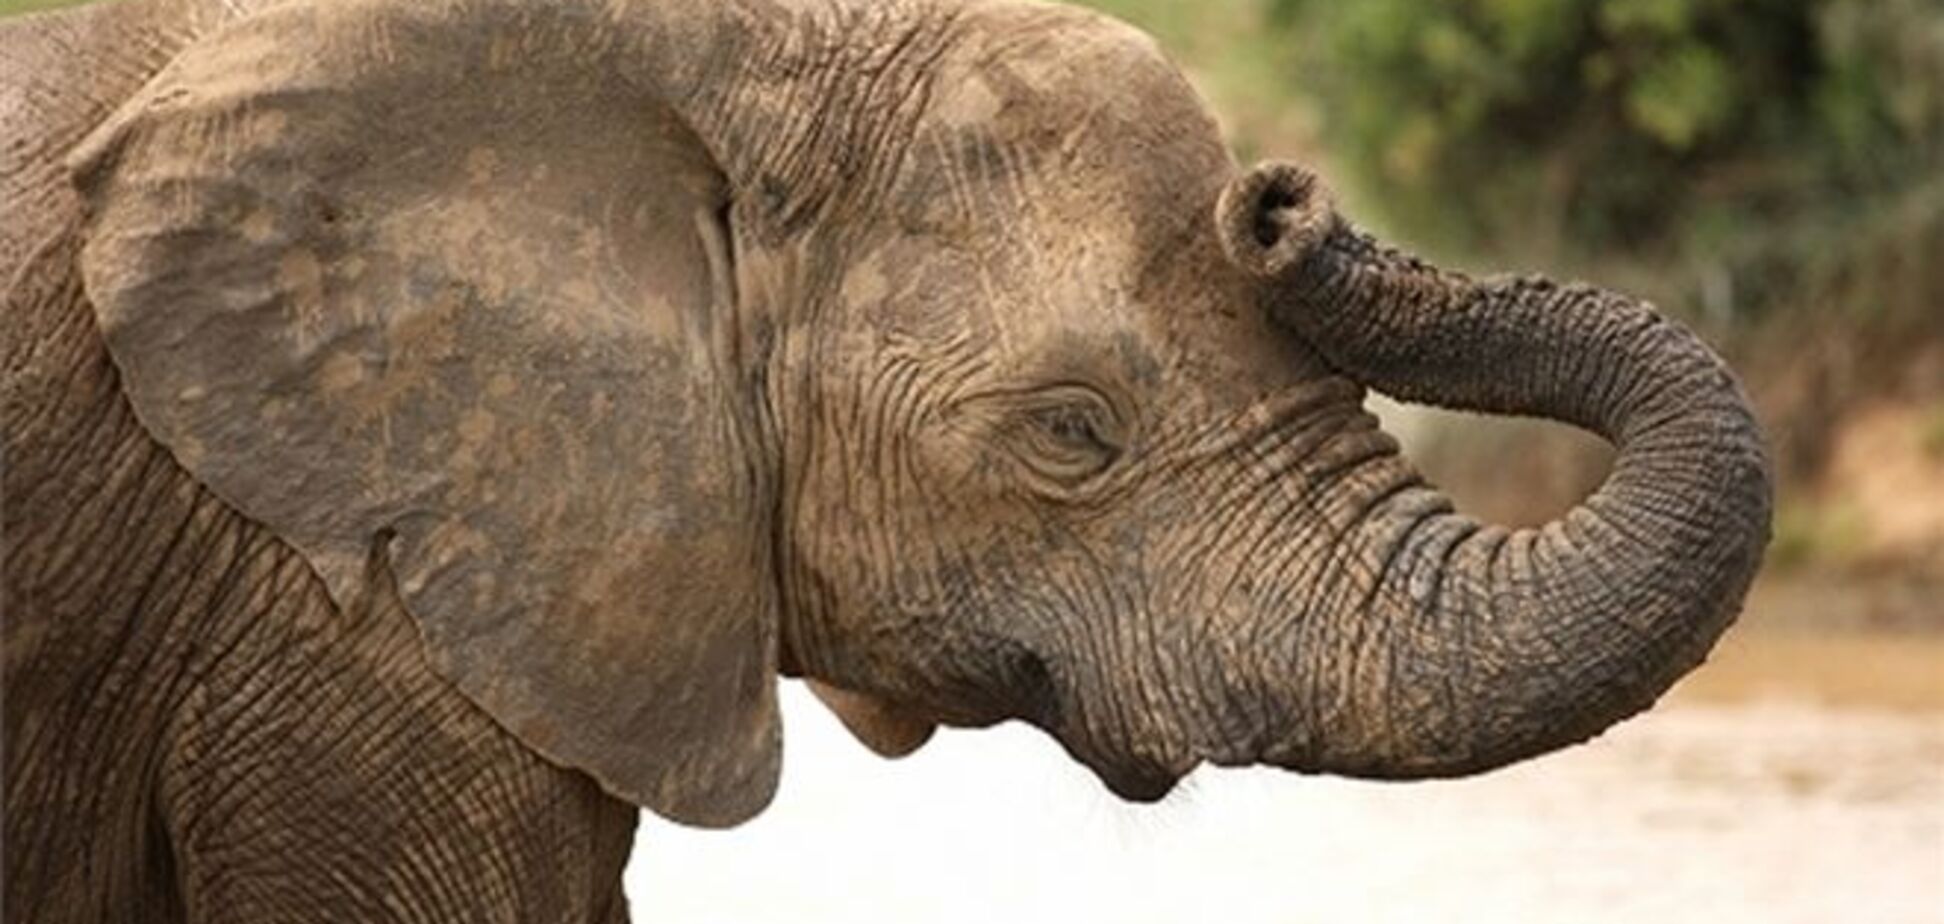 Слон растоптал туриста в Африке